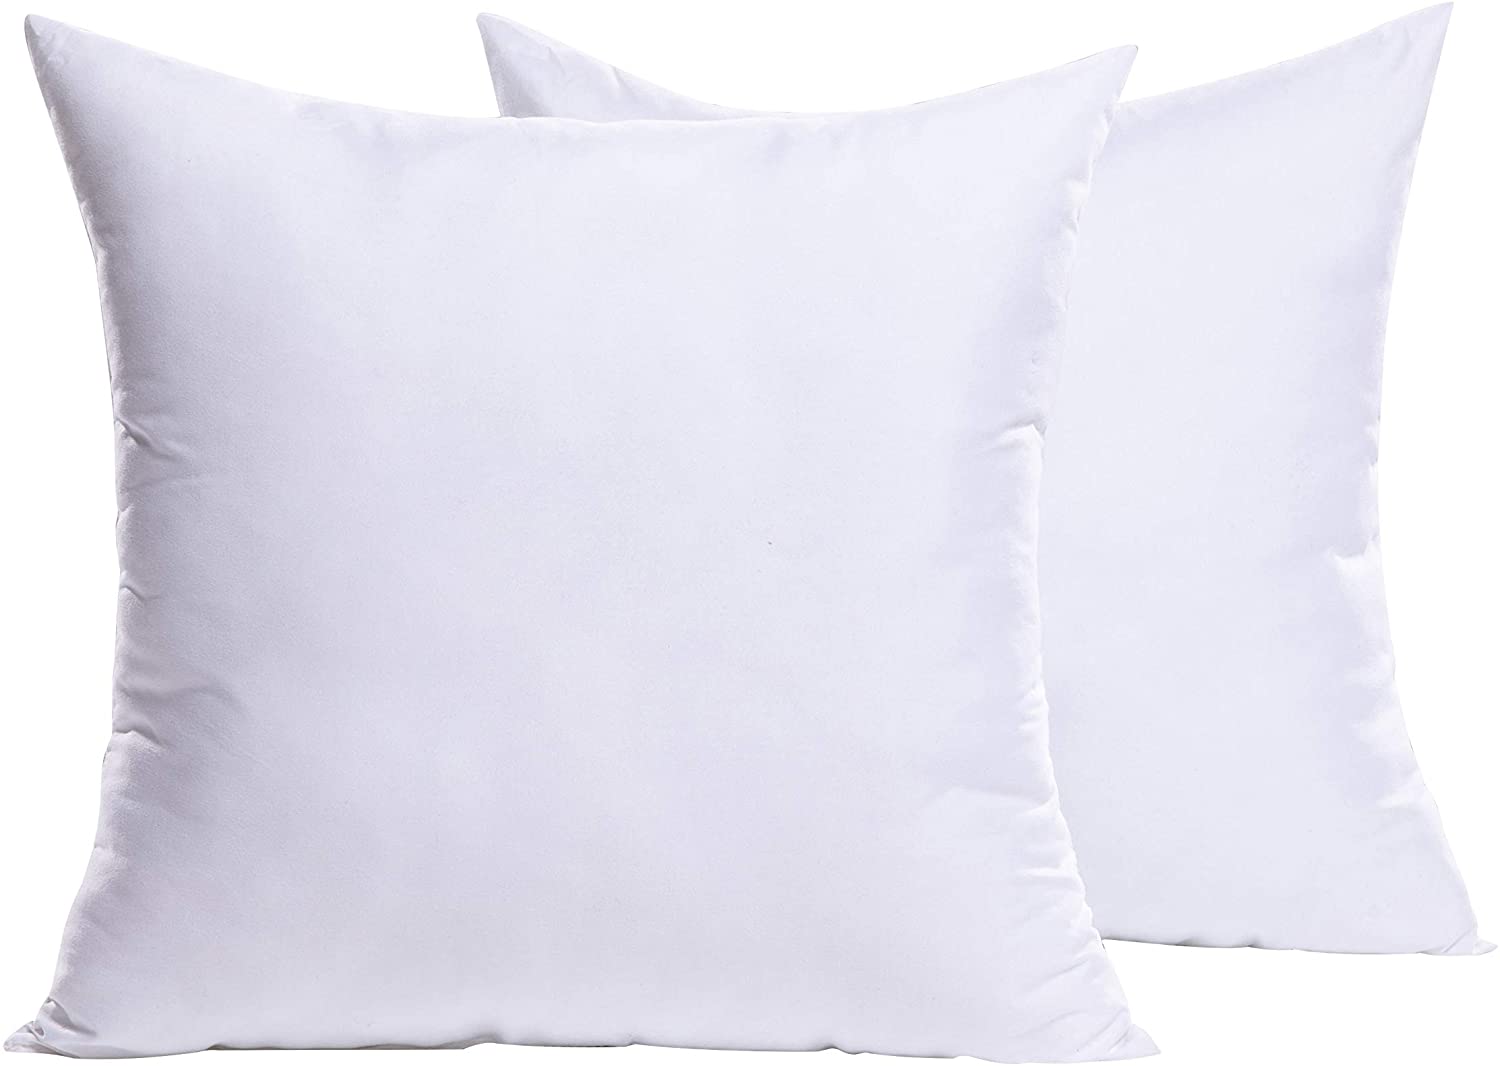 EDOW Throw Pillow Inserts Set of 4